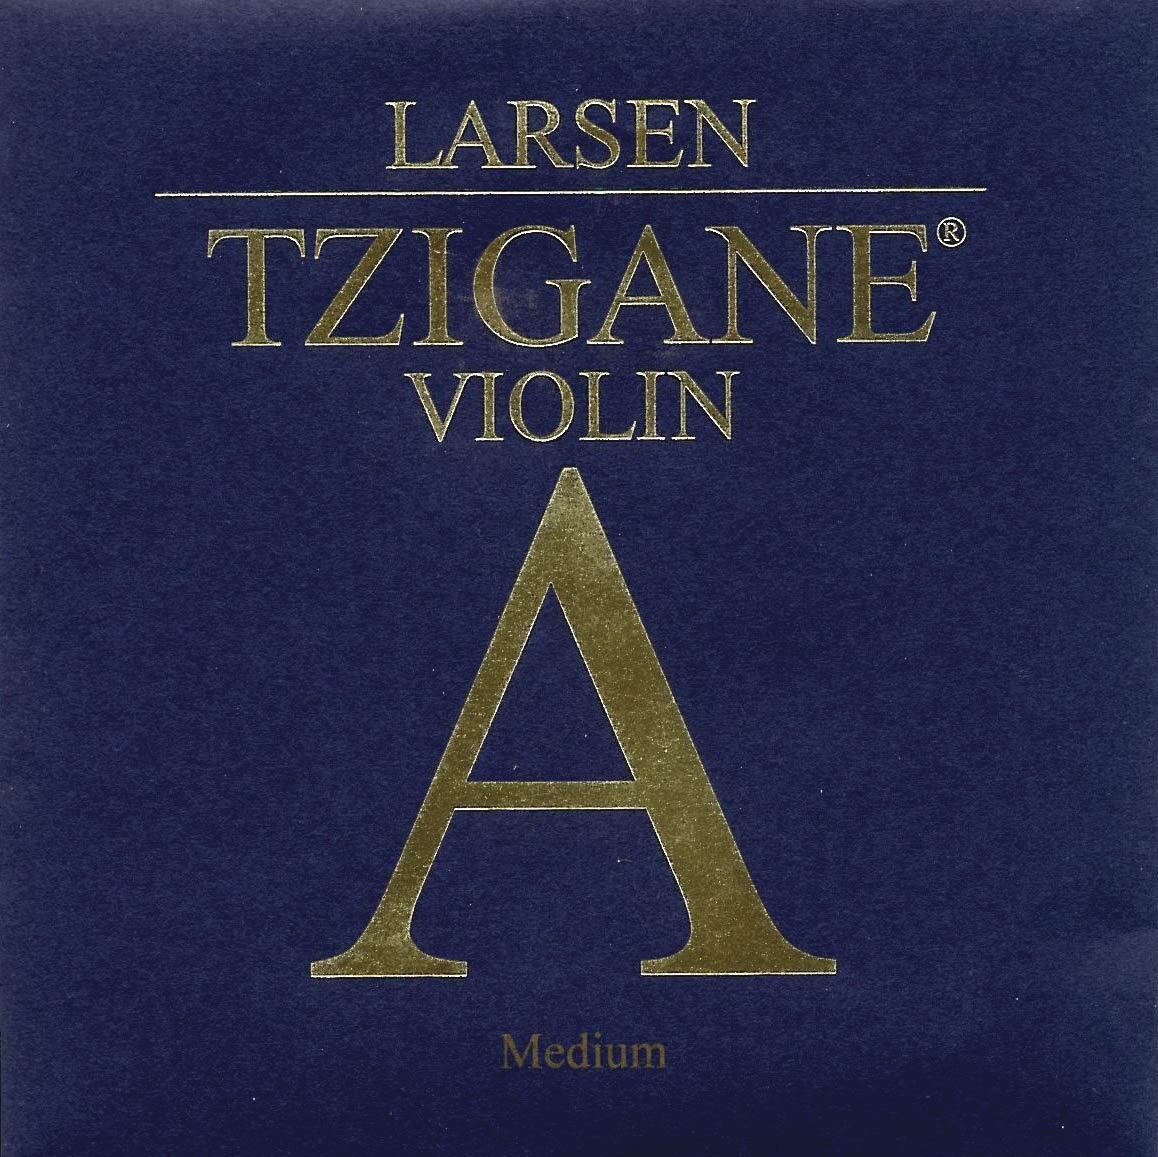 Tzigane A Violin String - Alum/composite fiber, ball end